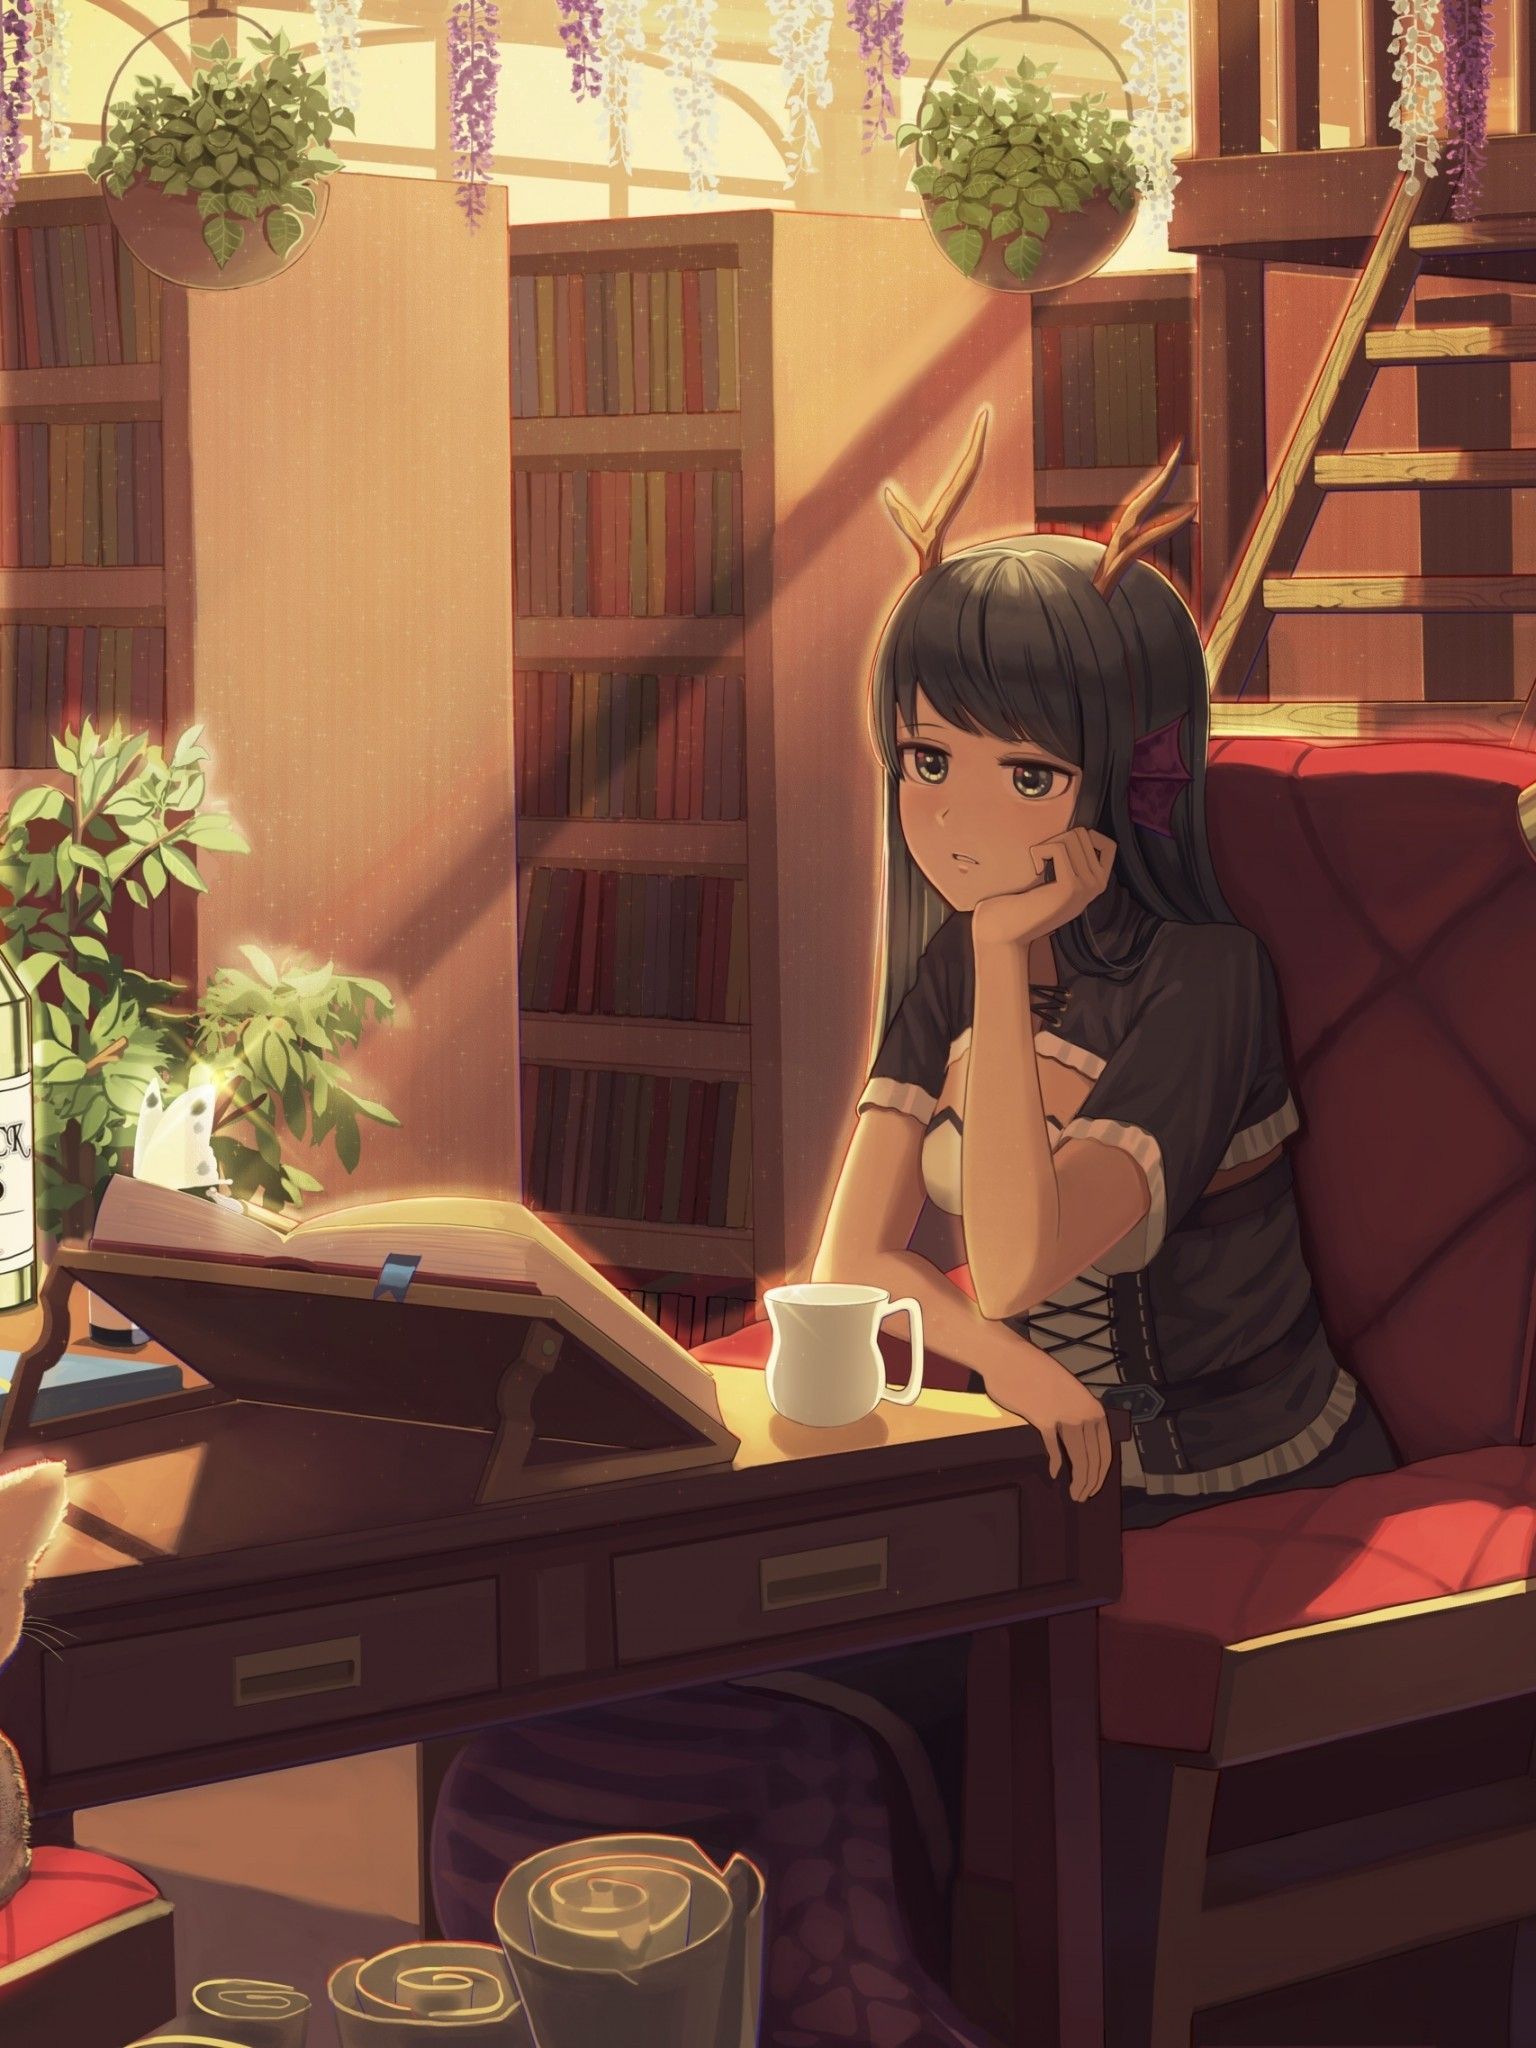 Anime Girl, Horns, Neko, Room, Books, Library, Studying